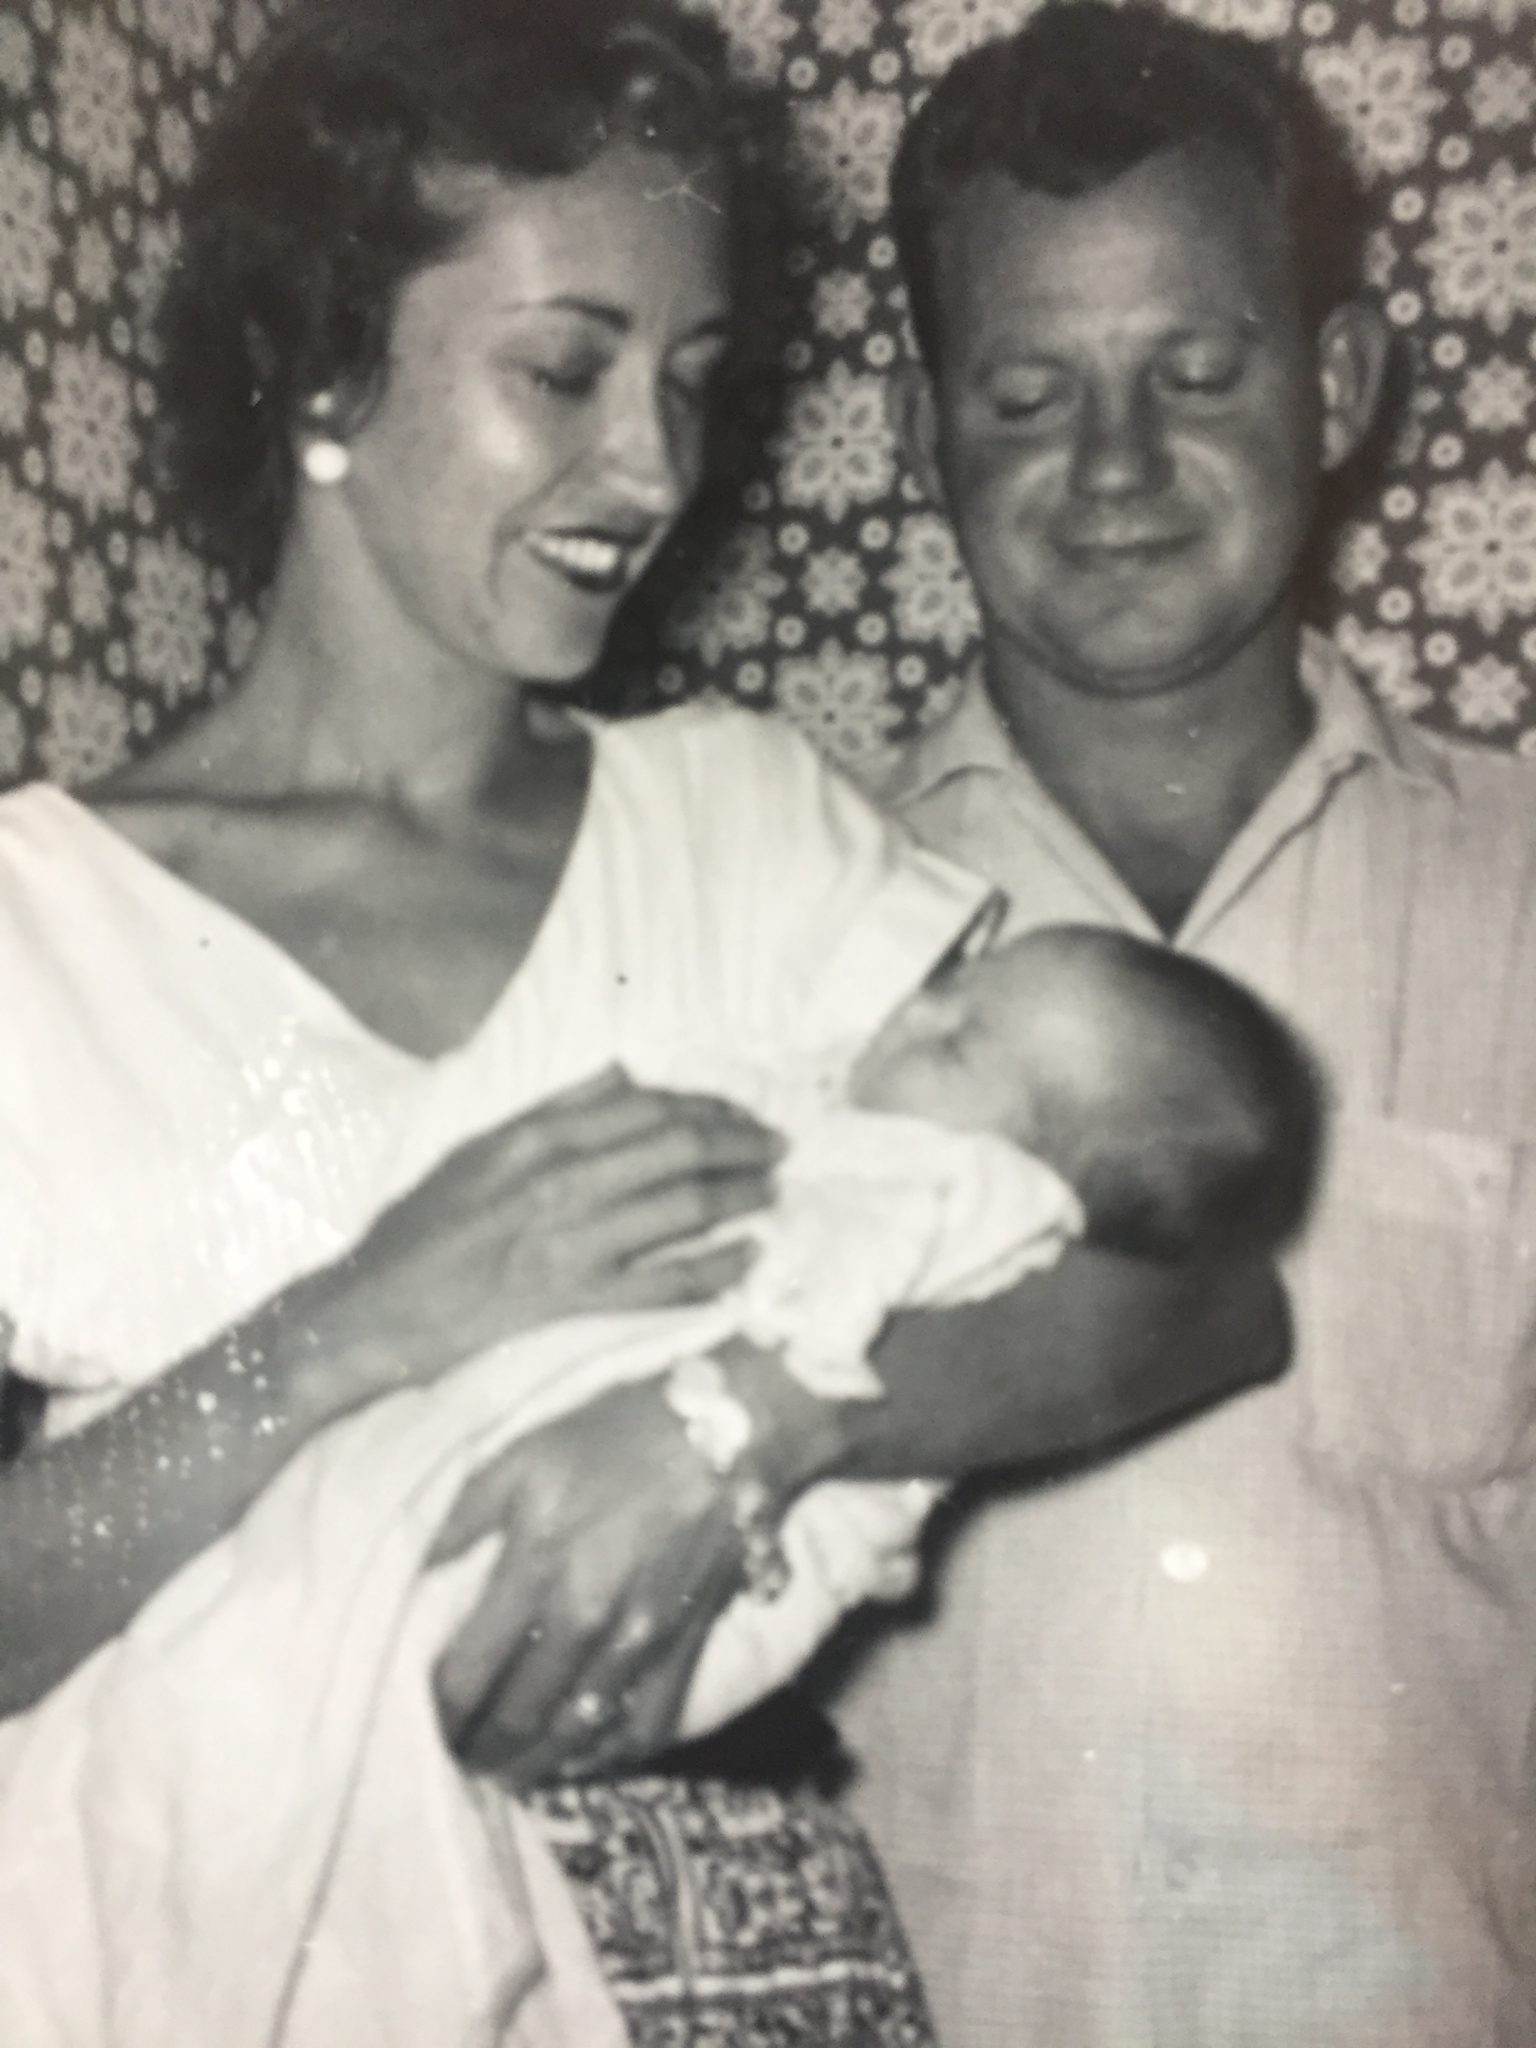 Steve and Mary Carmichael, holding their newly baptized godchild, Holly.